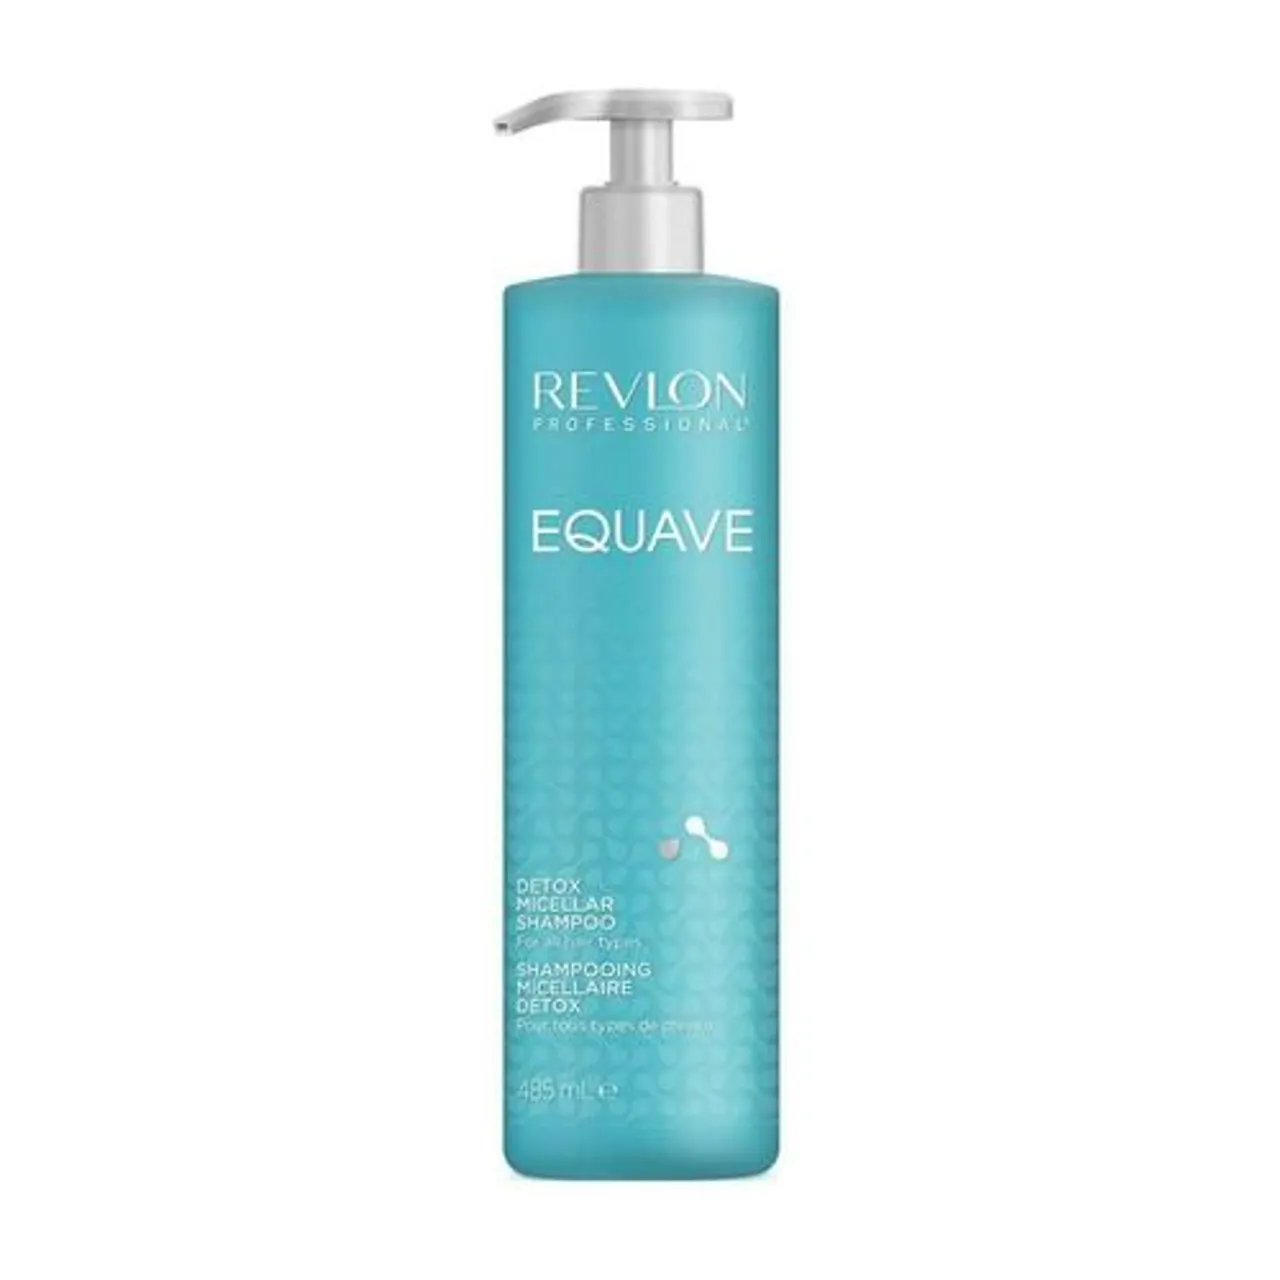 Revlon Equave Instant Detangling Miccelar Shampoo 485 ml